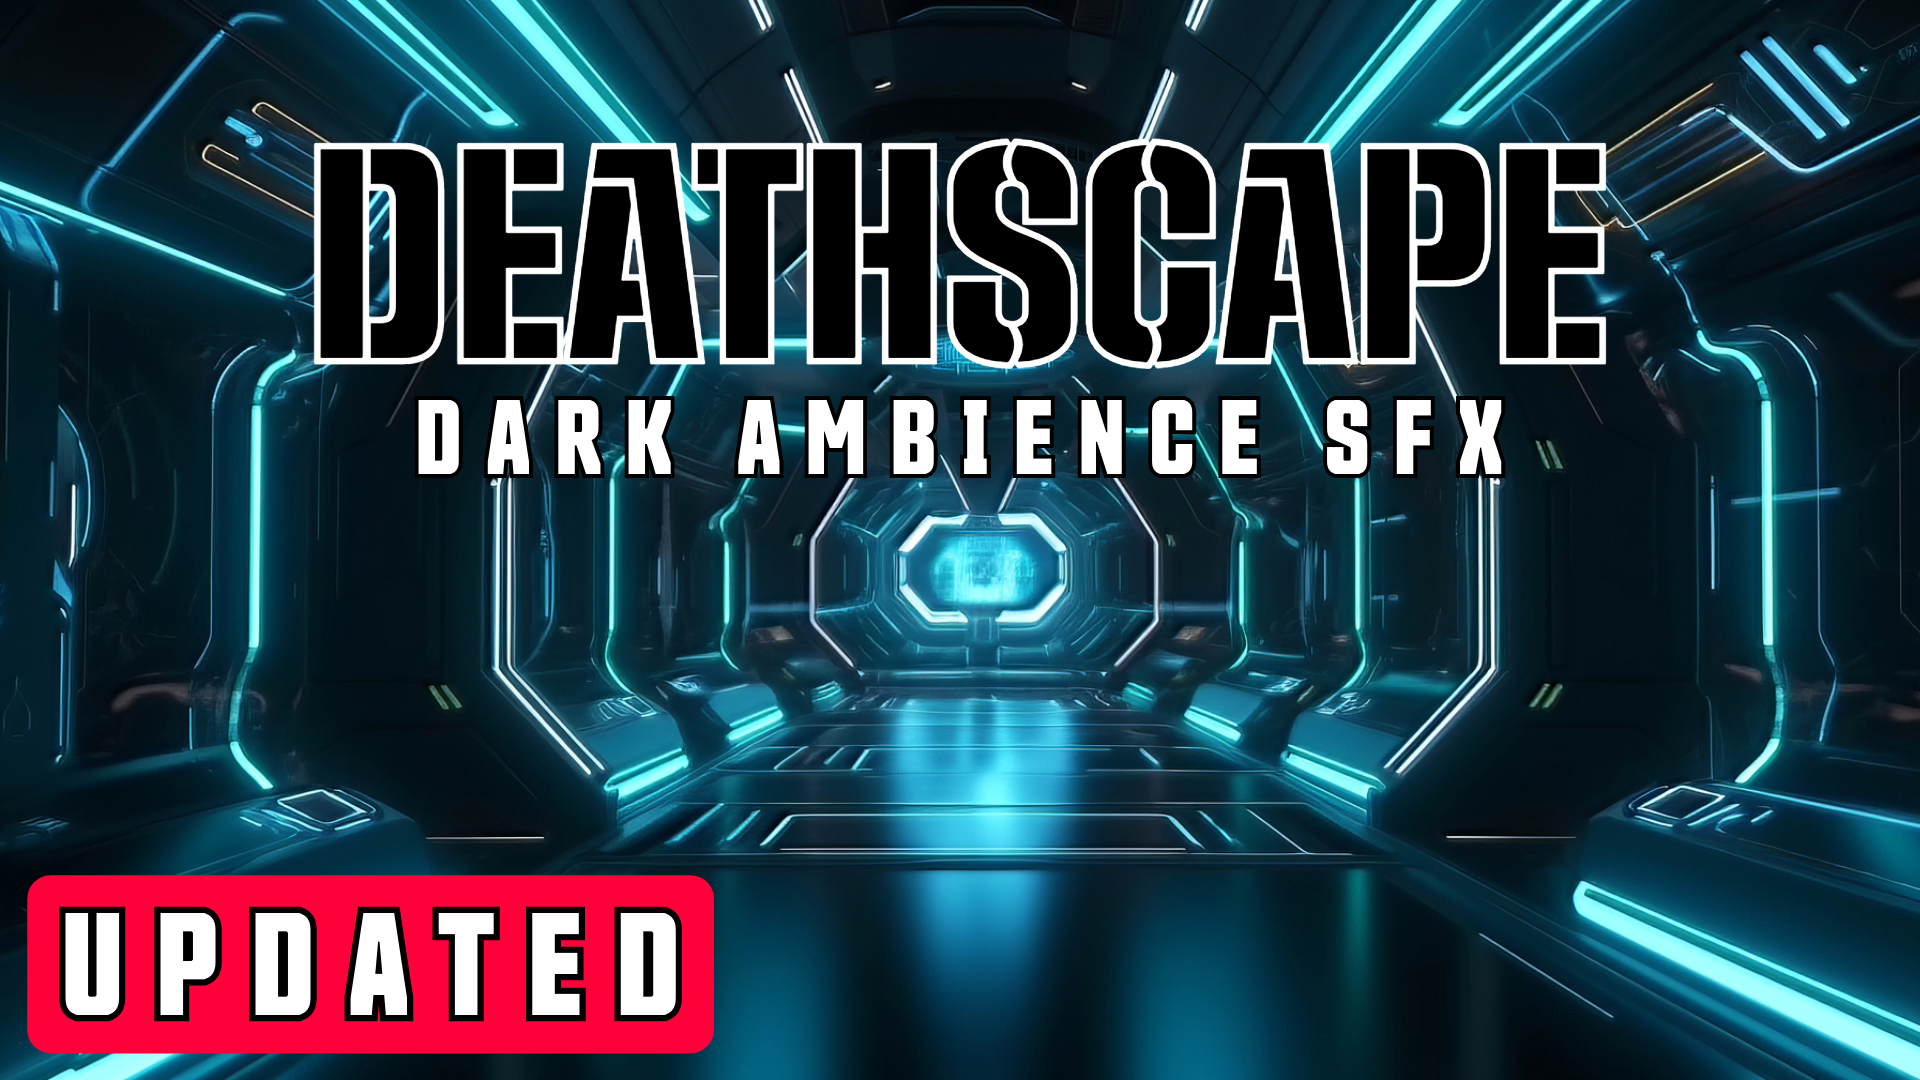 Dark Ambience SFX: Deathscape